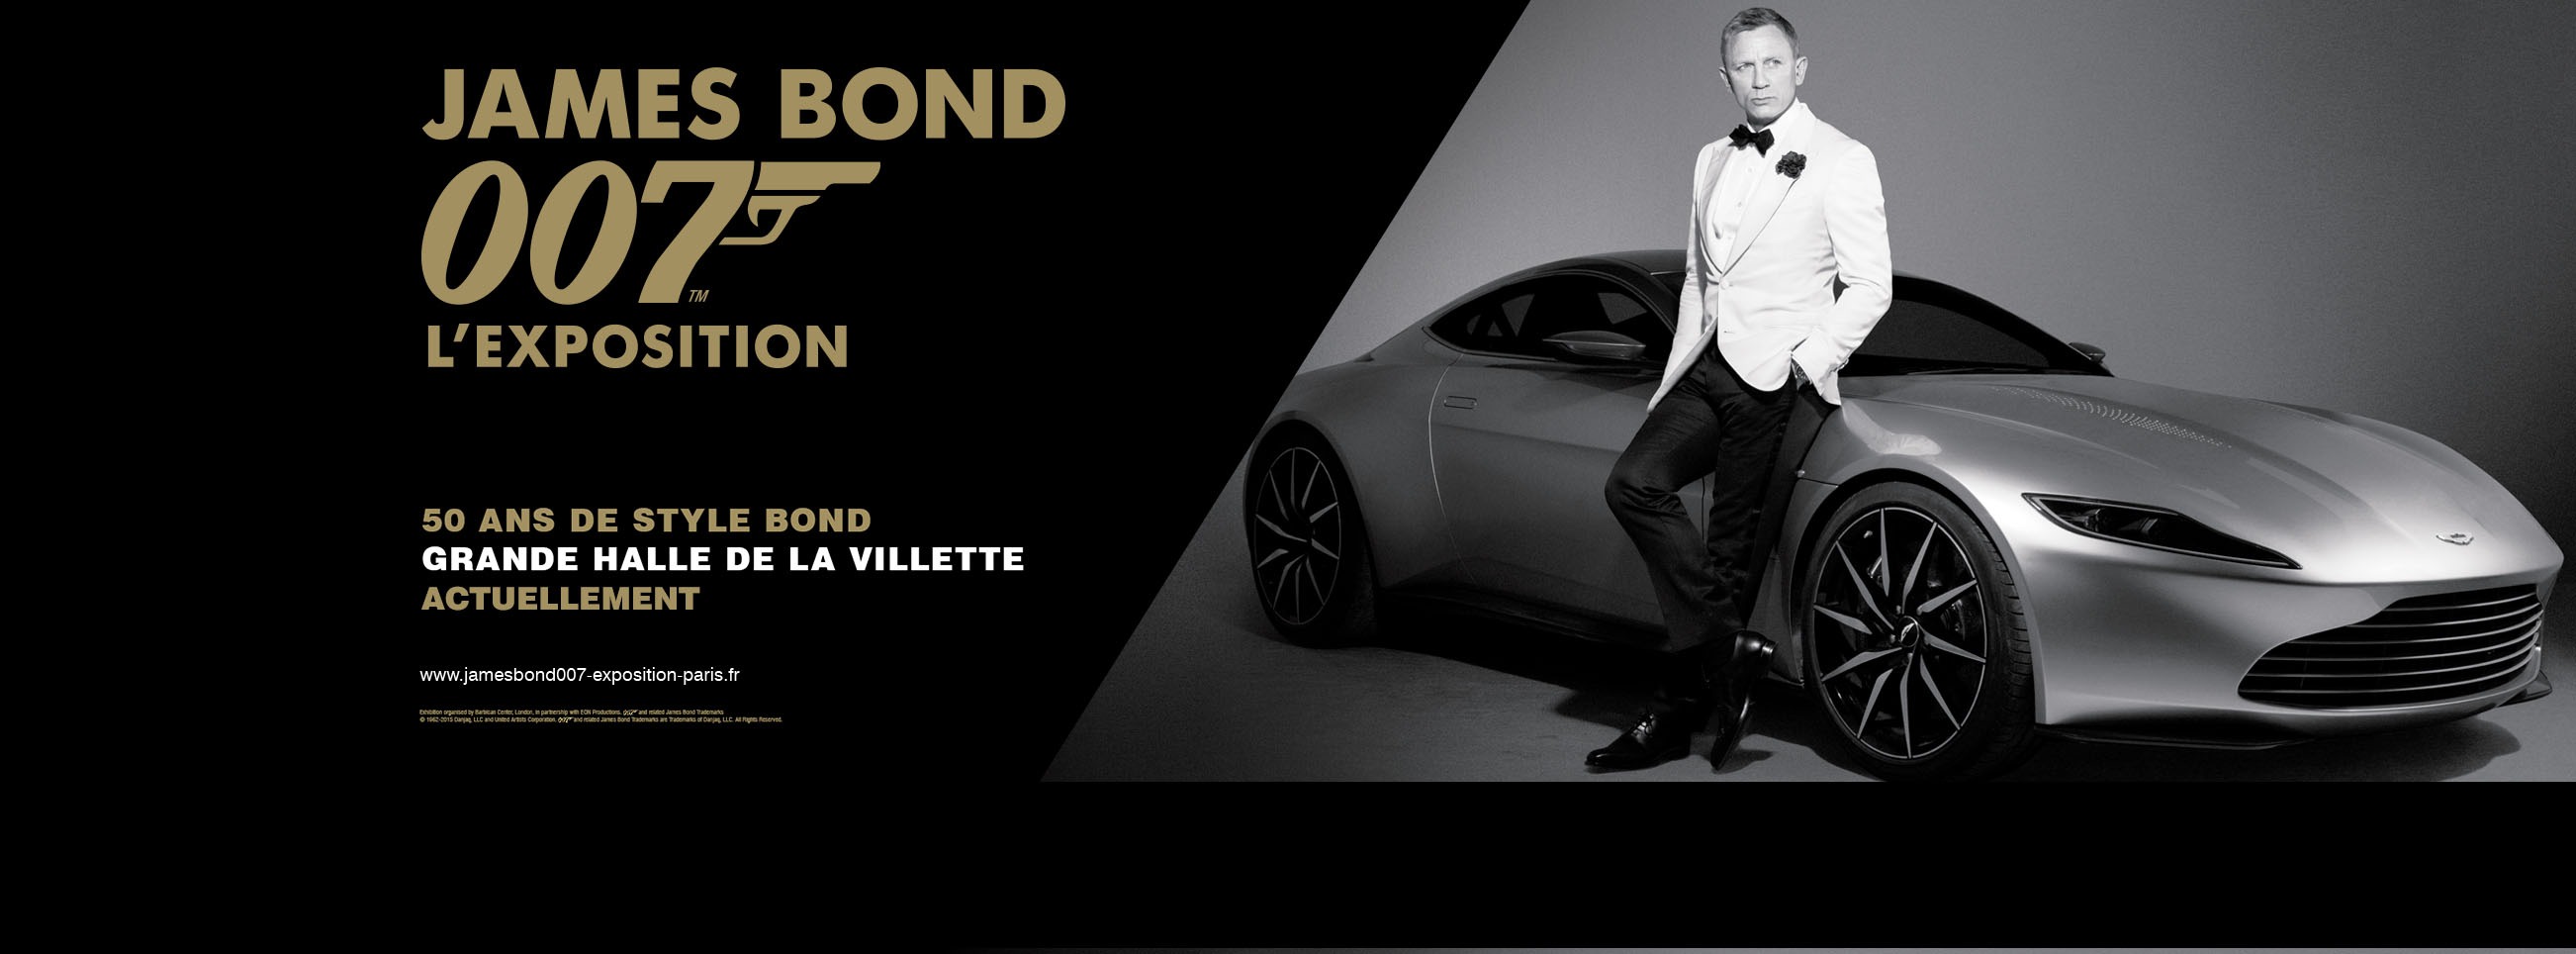 James Bond l'exposition